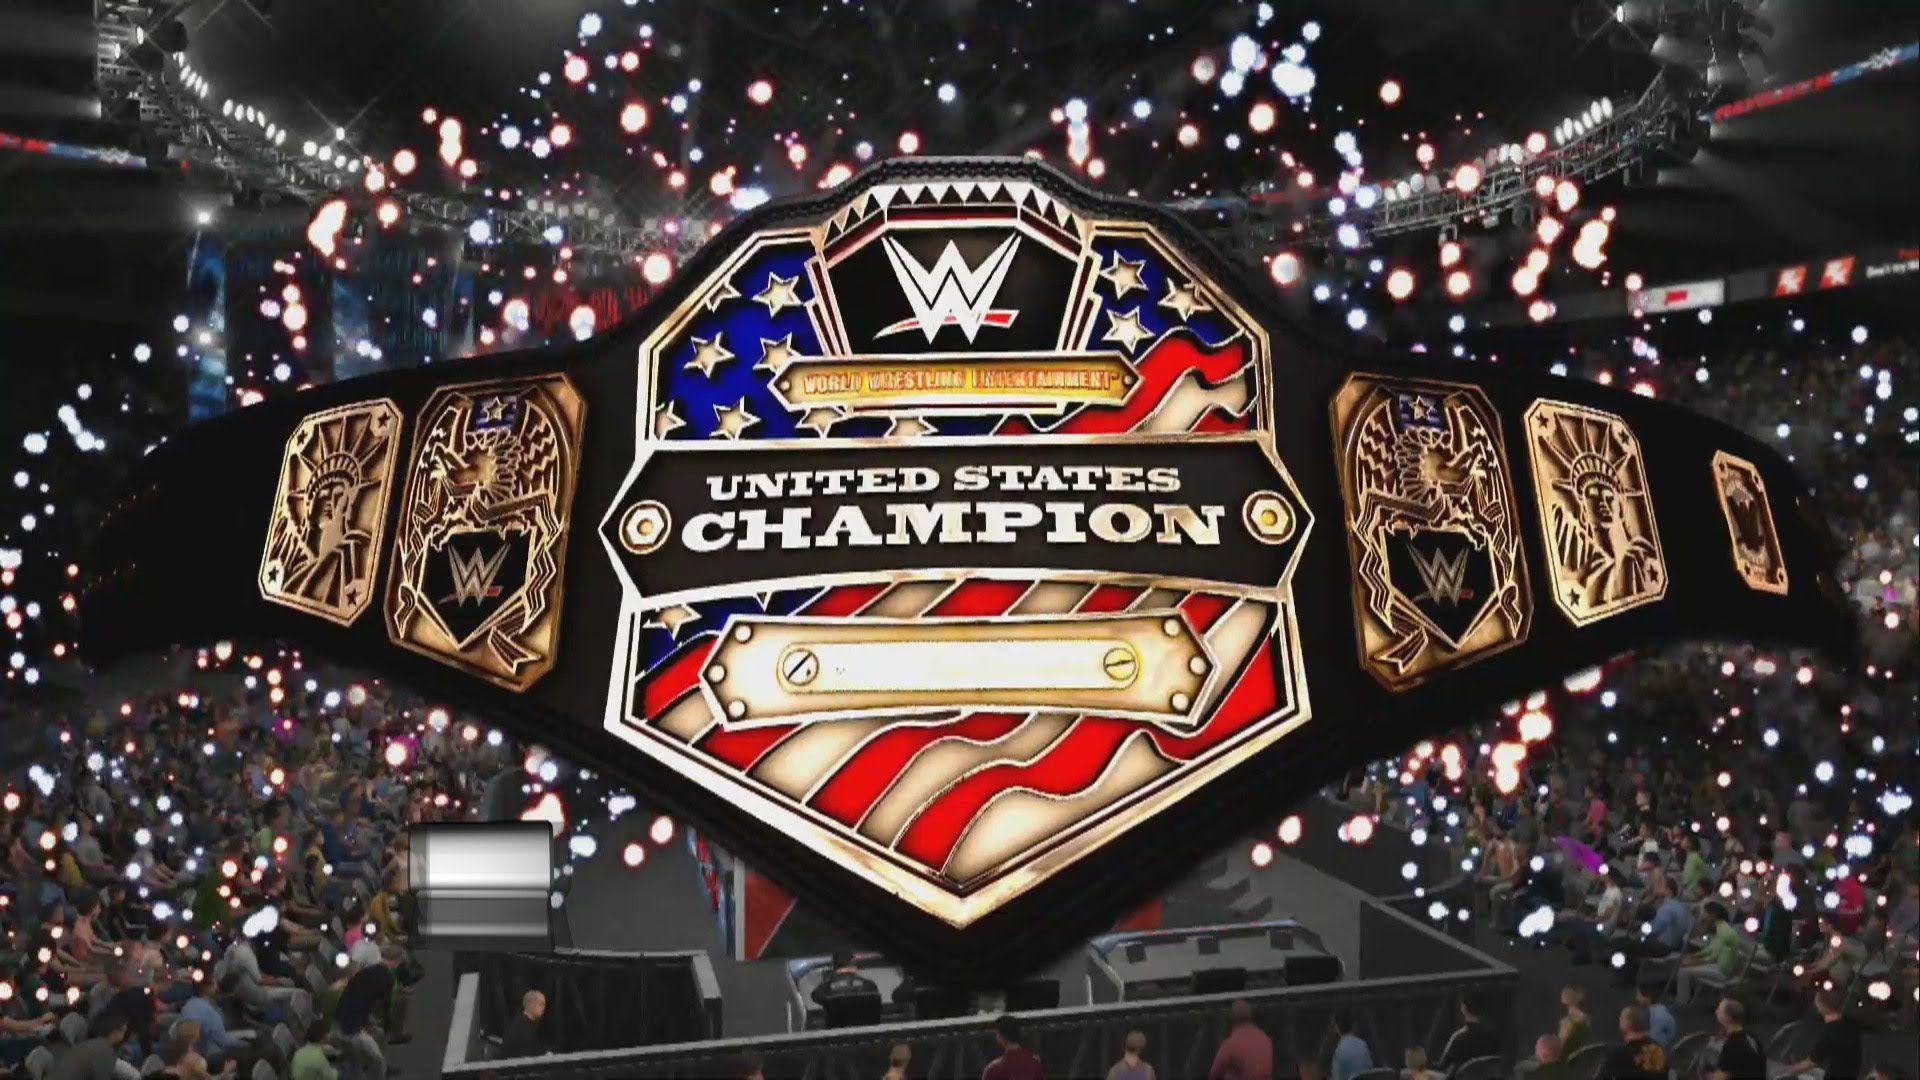 Champion WWE wallpaper HD 2016 in WWE